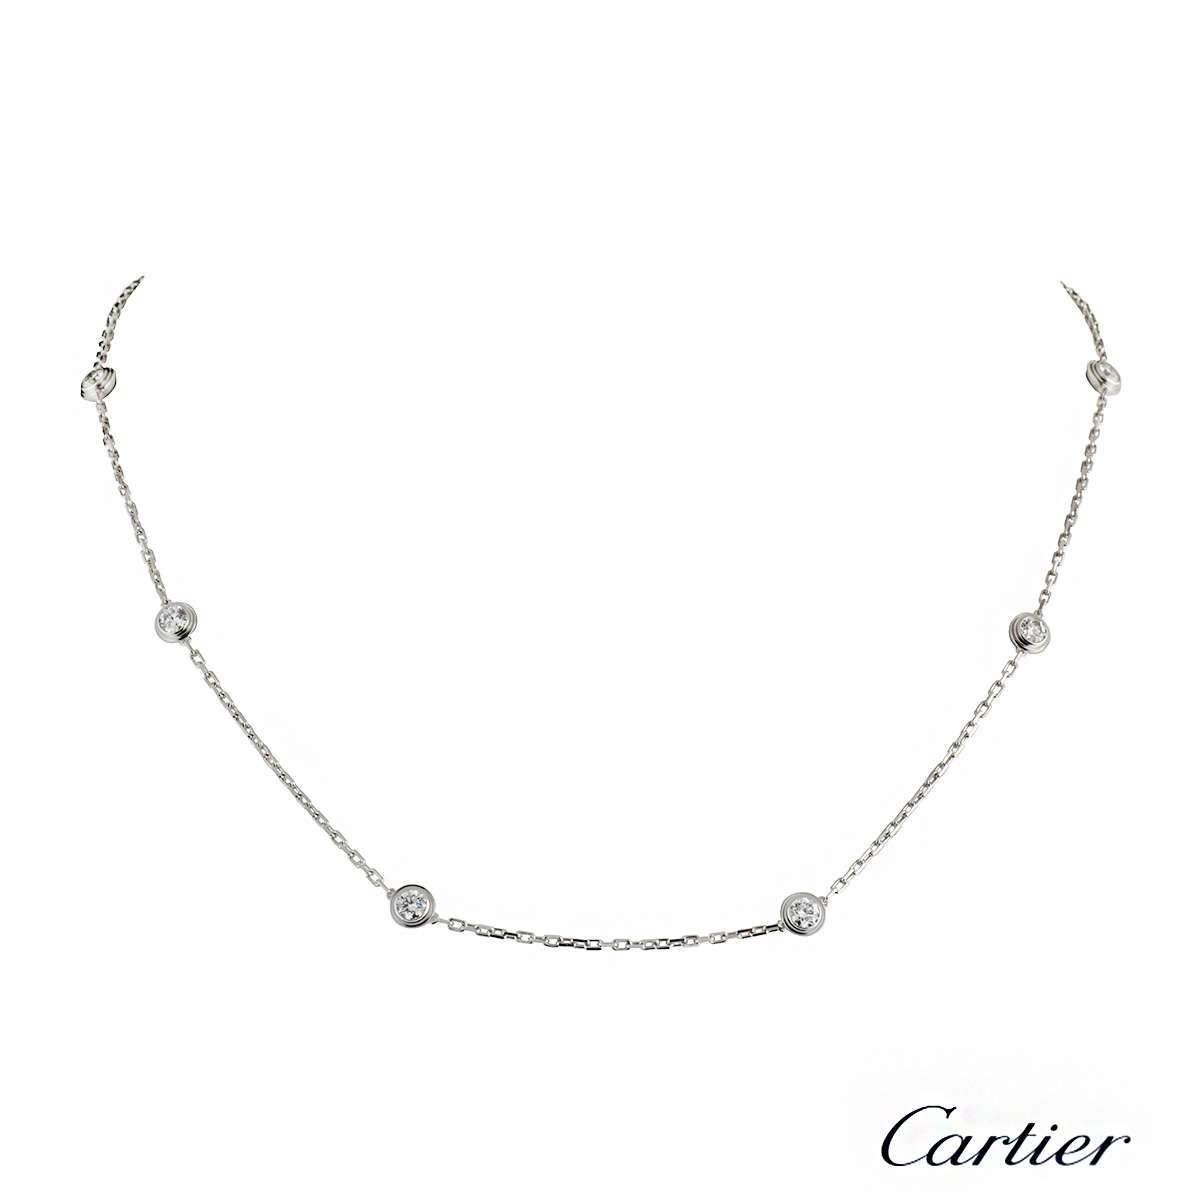 cartier necklace diamants legers